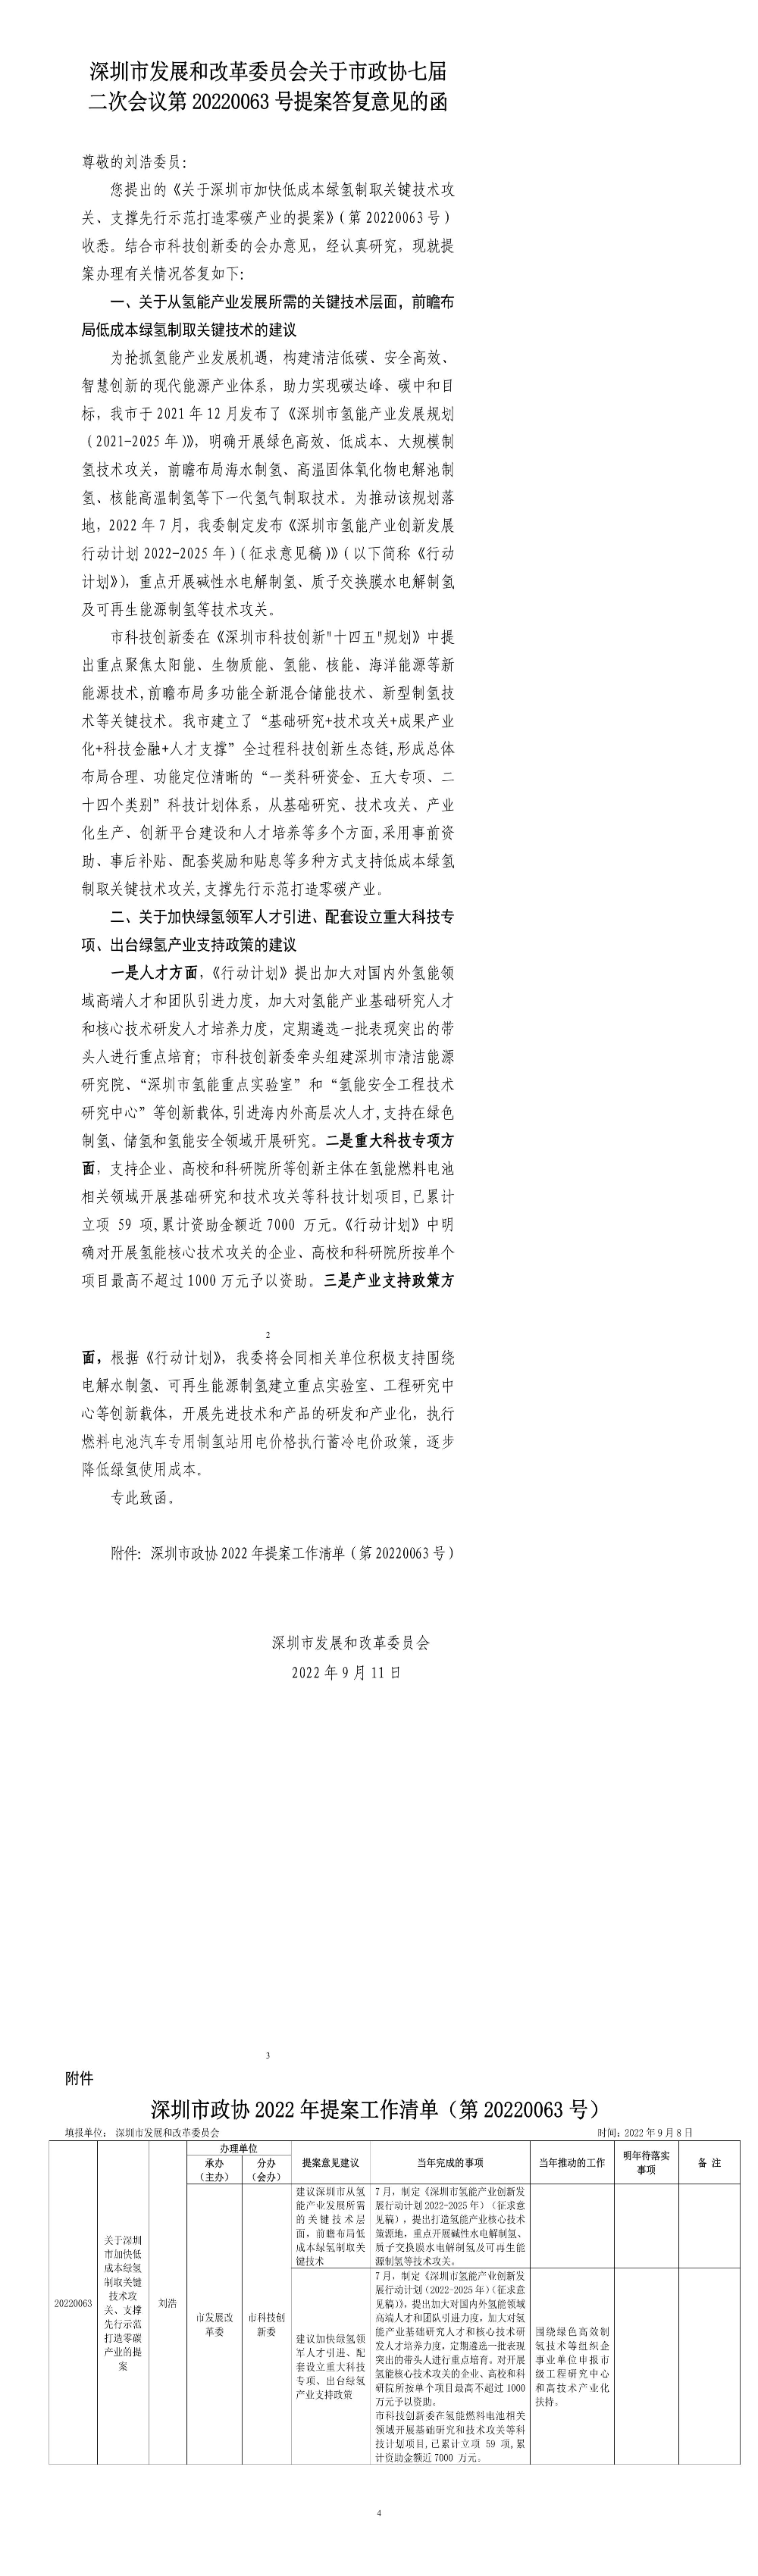 深圳市发展和改革委员会关于市政协七届二次会议第20220063号提案答复意见的函.jpg